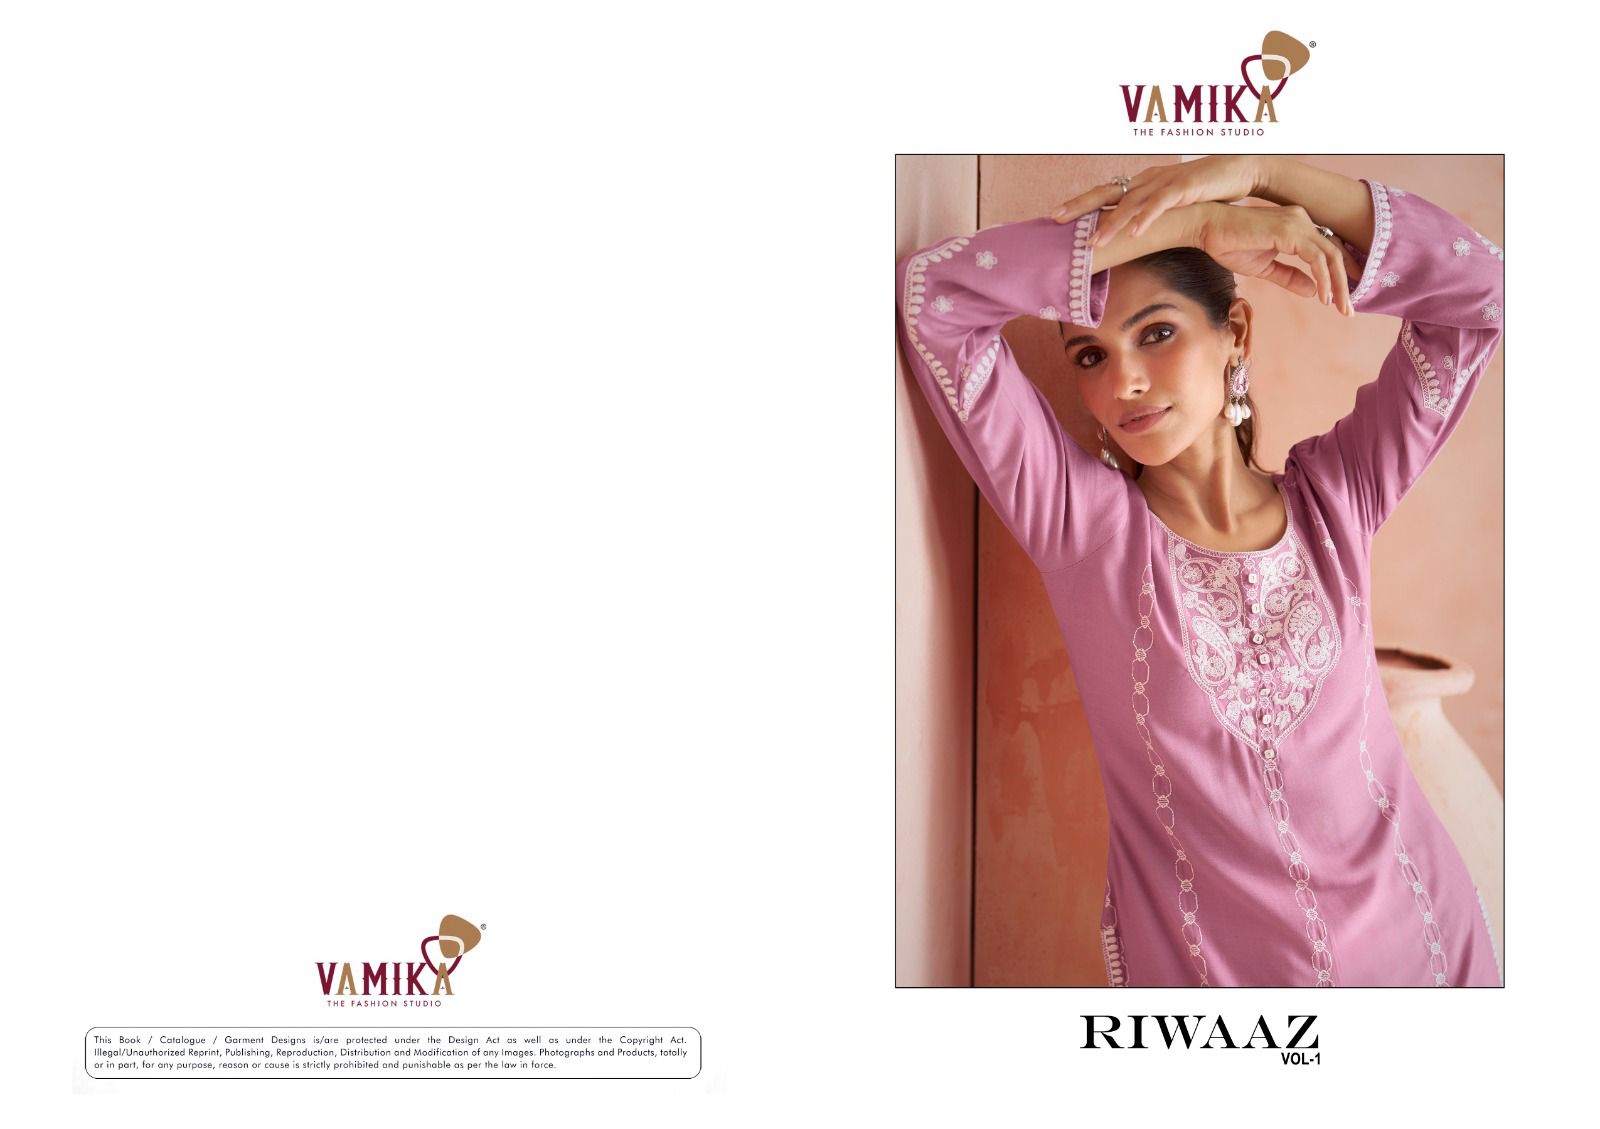 Vamika Riwaaz Vol 1 collection 5